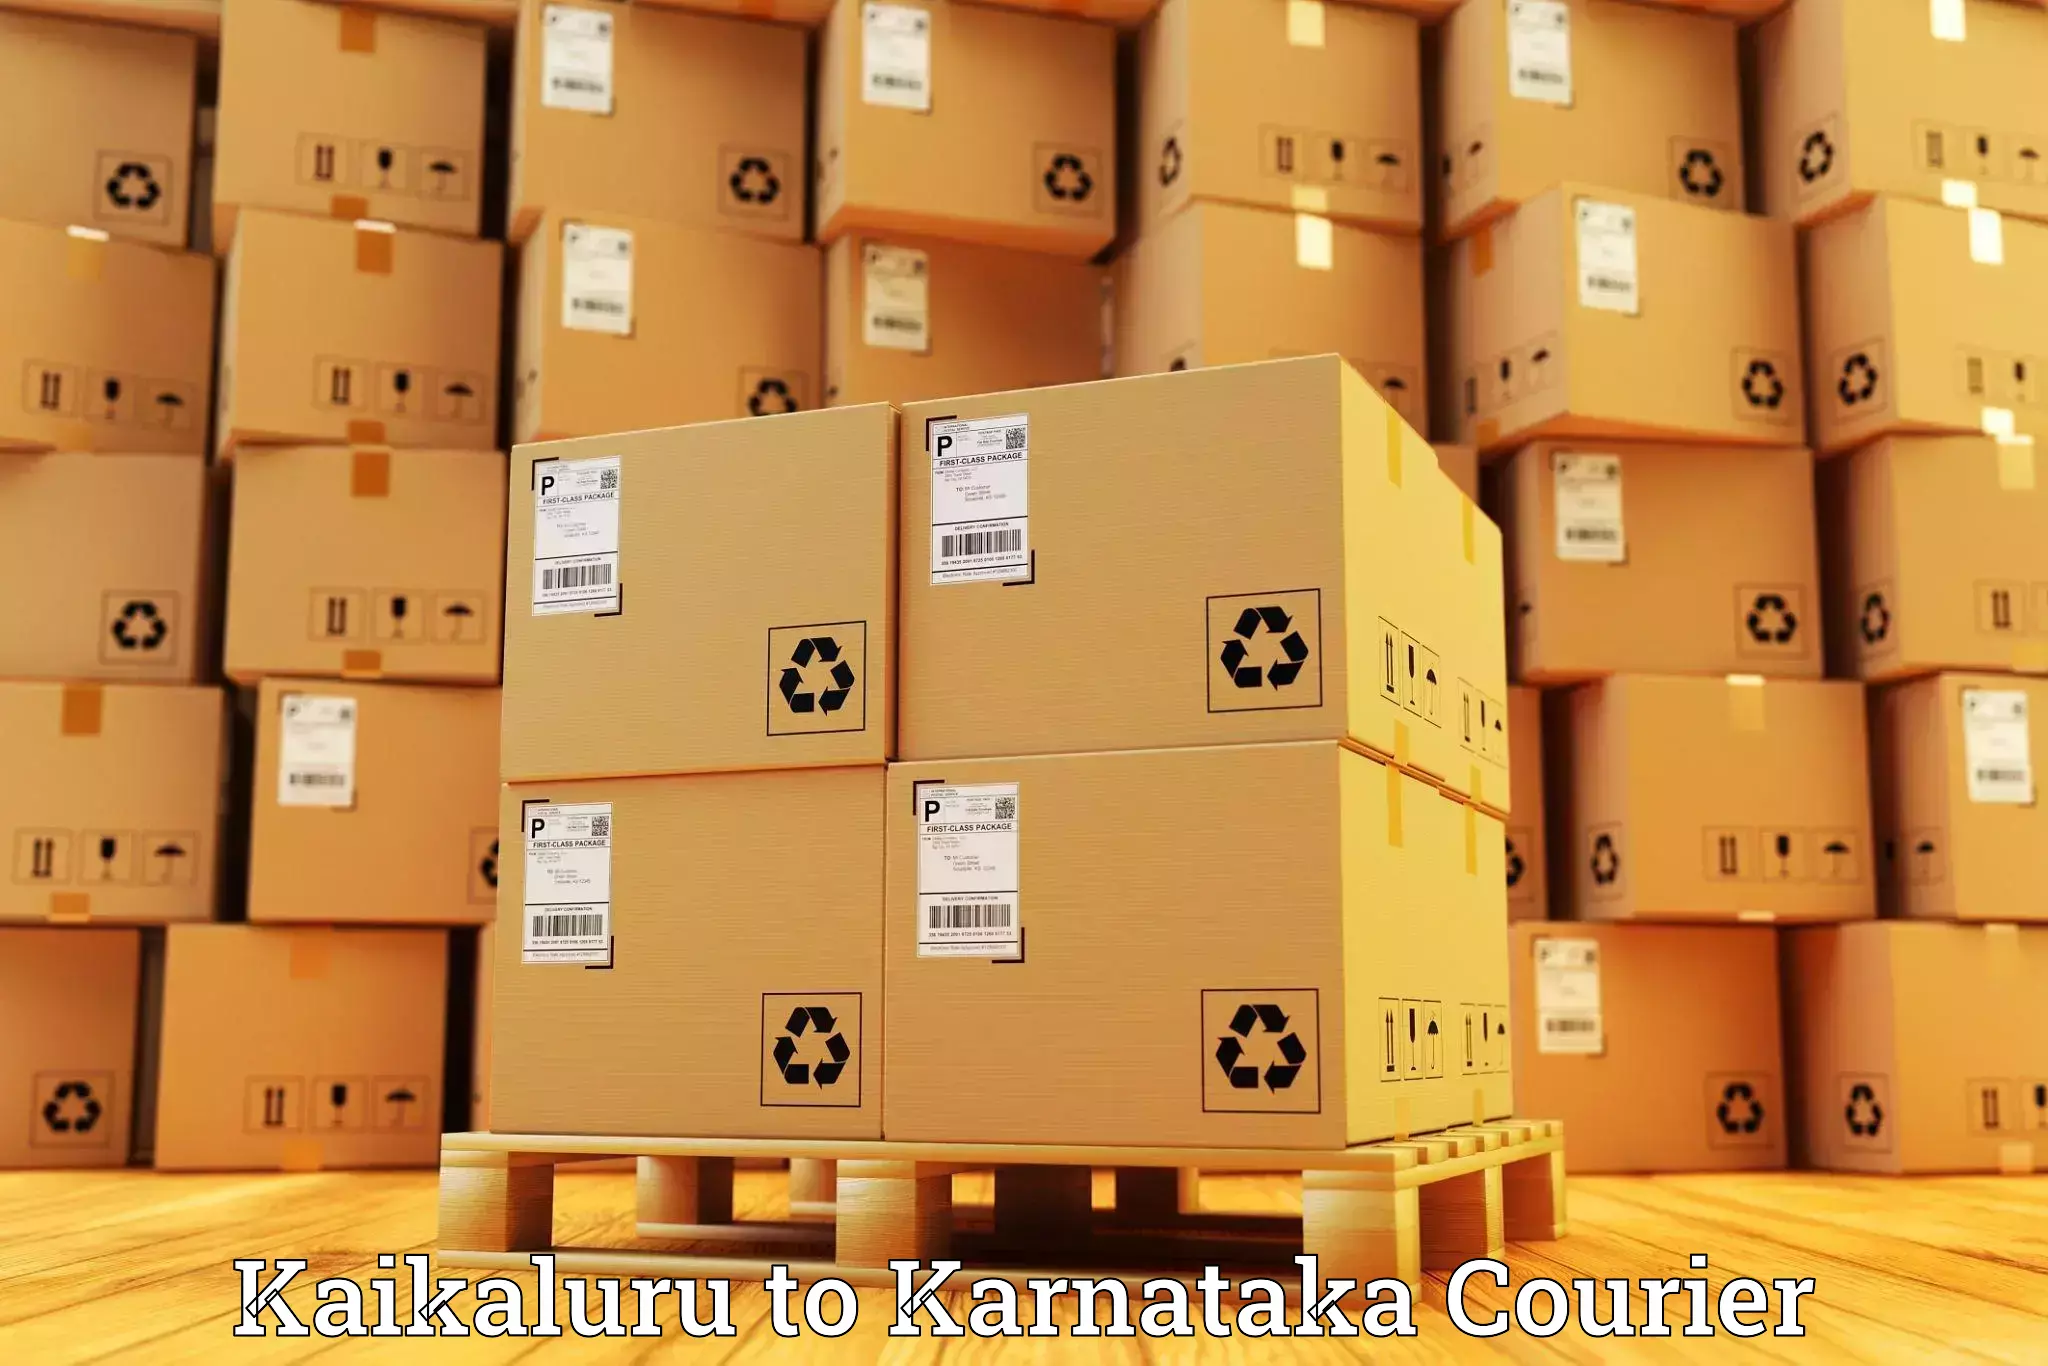 Professional parcel services Kaikaluru to Assaigoli